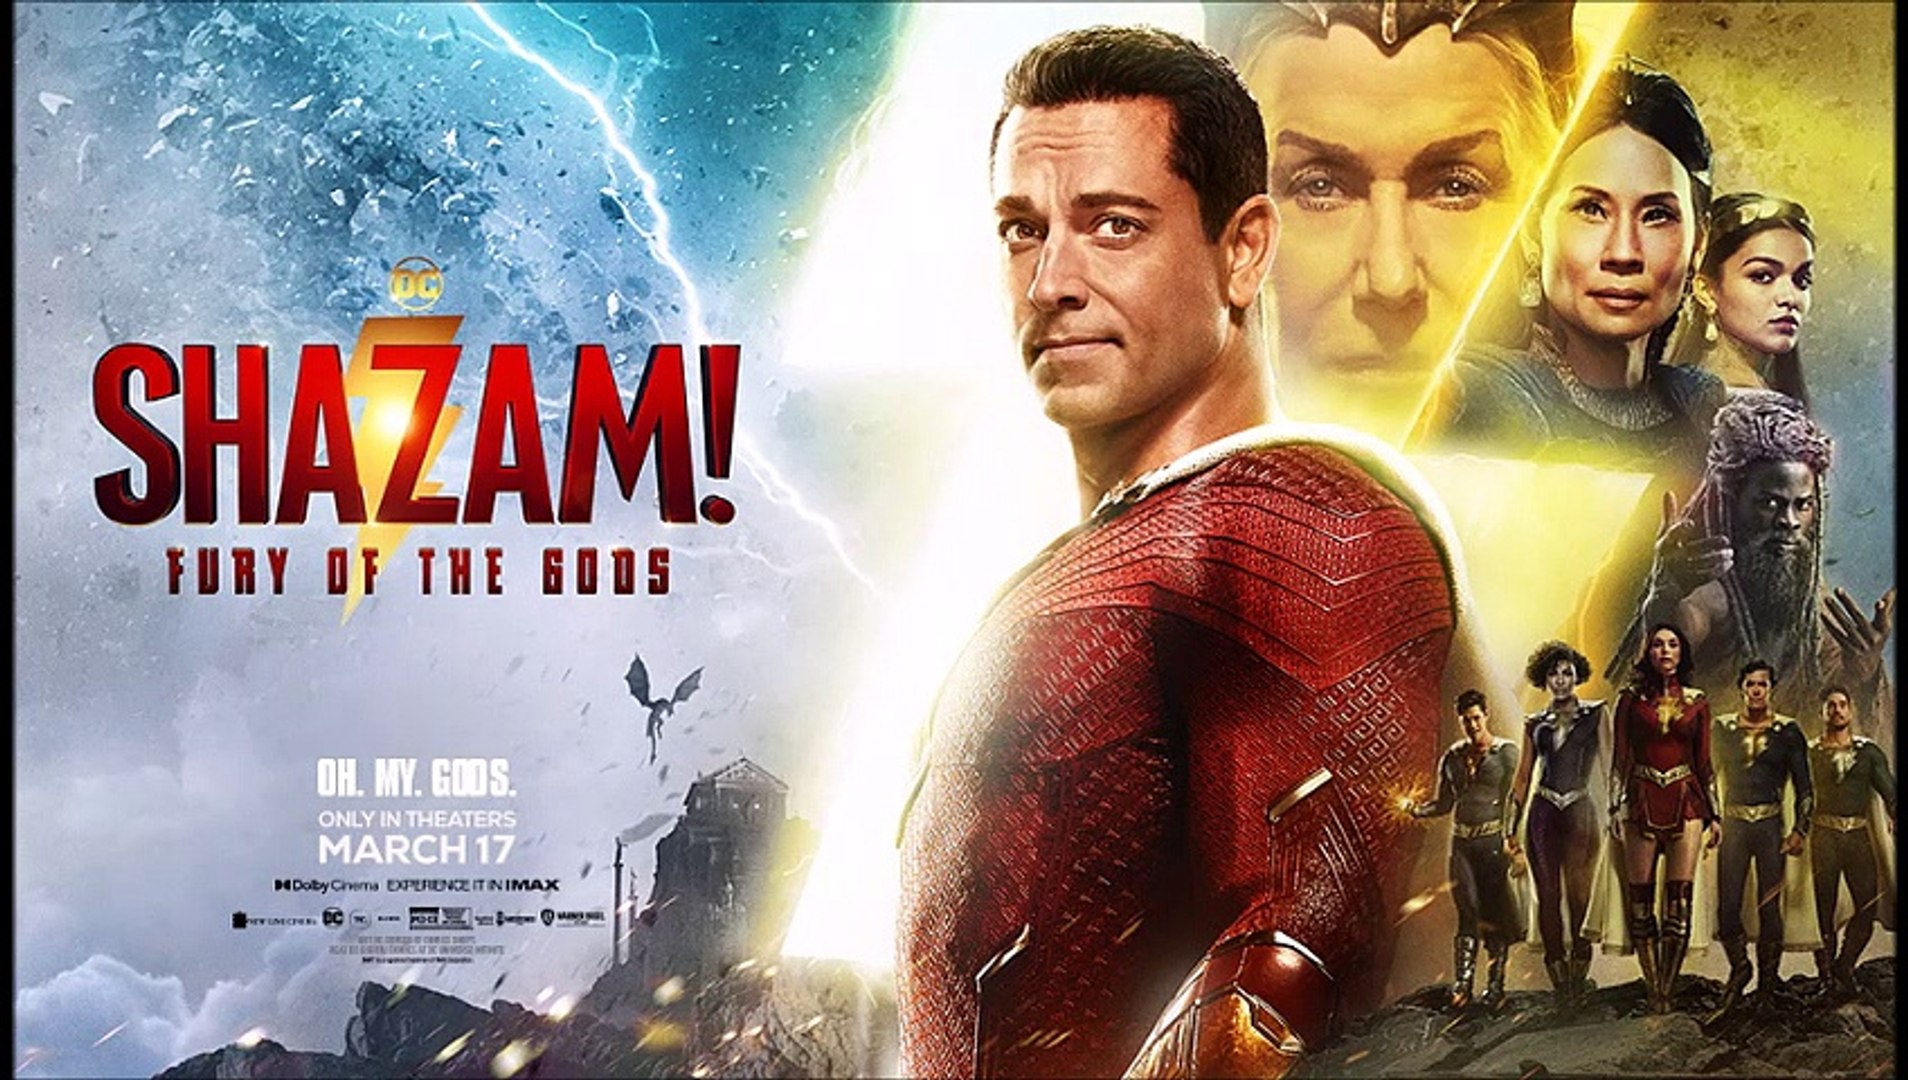 SHAZAM 2: Fury of the Gods Trailer 2 (2023) 